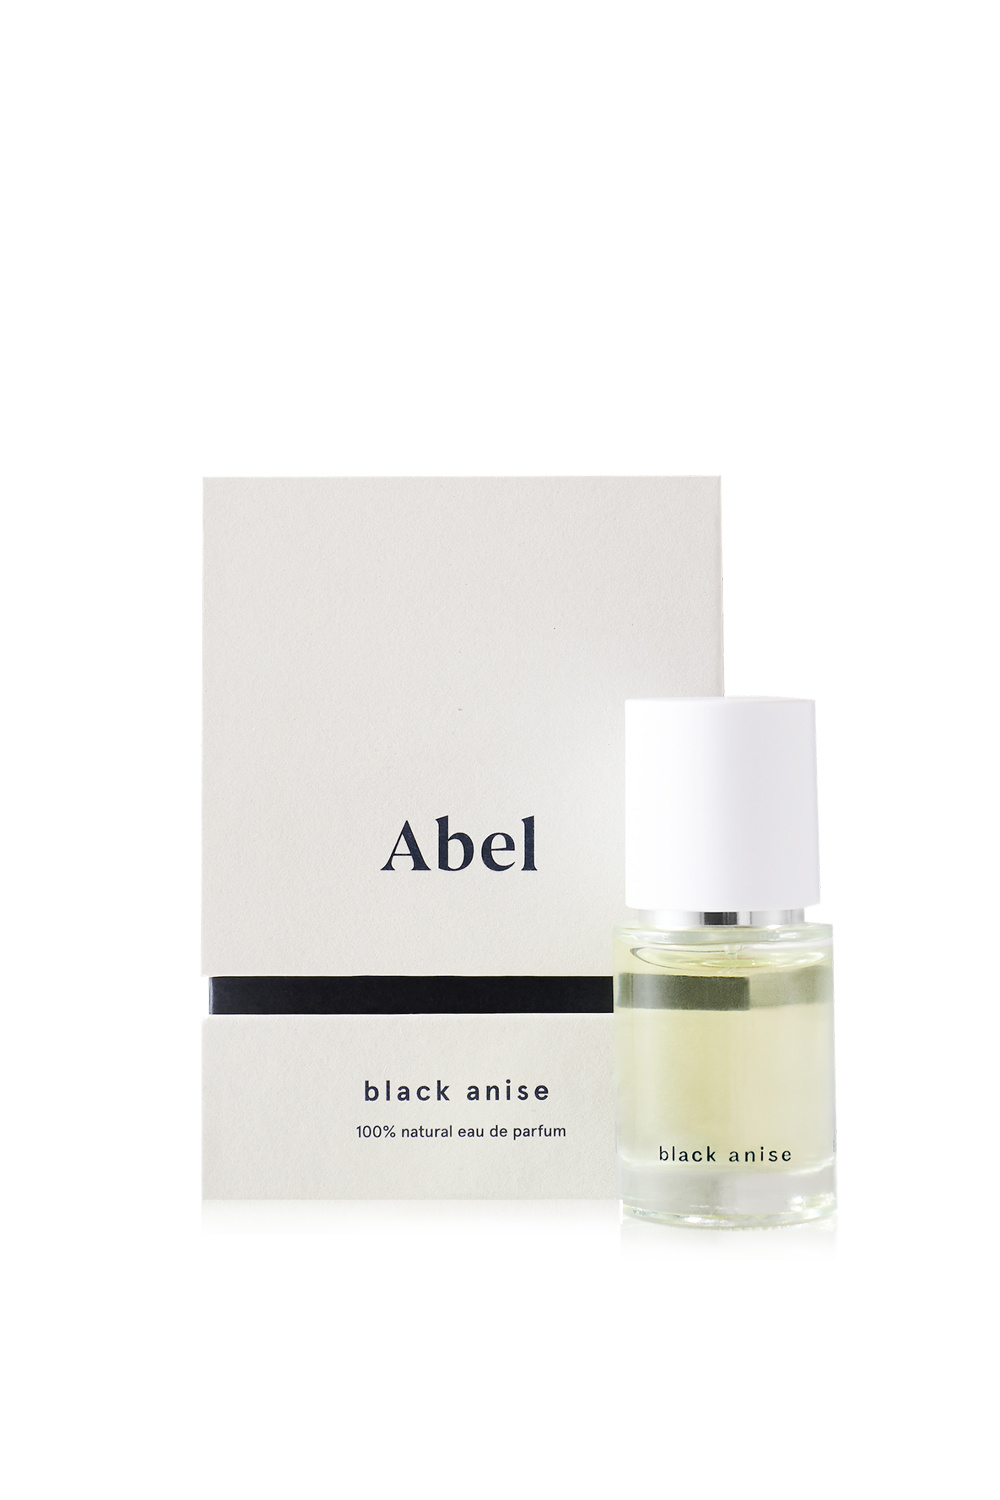 abel fragrance black anise 15 ml